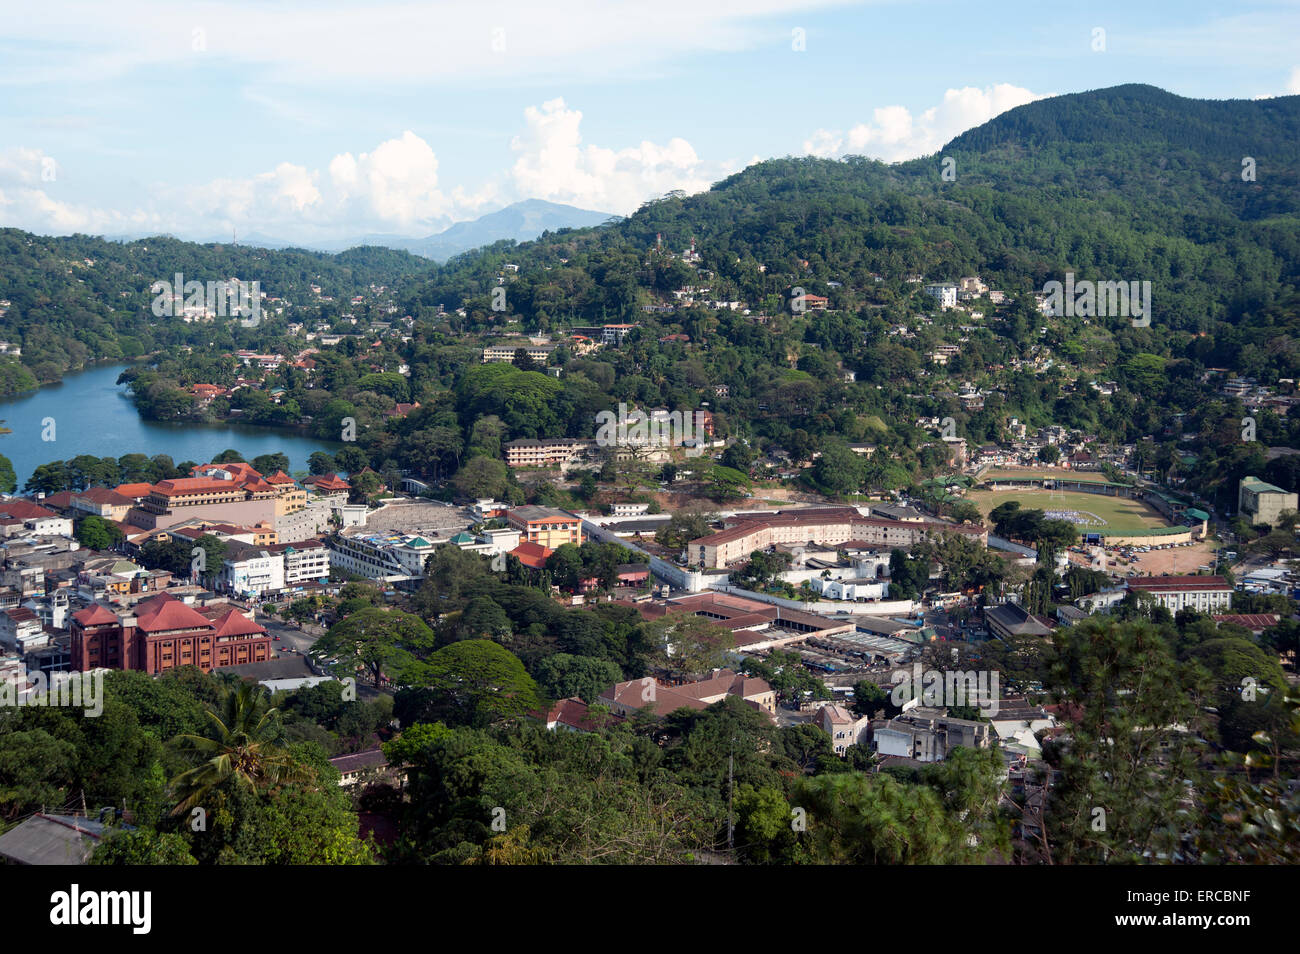 Vue sur la ville de Kandy, y compris le terrain de cricket des collines environnantes du Sri Lanka Banque D'Images